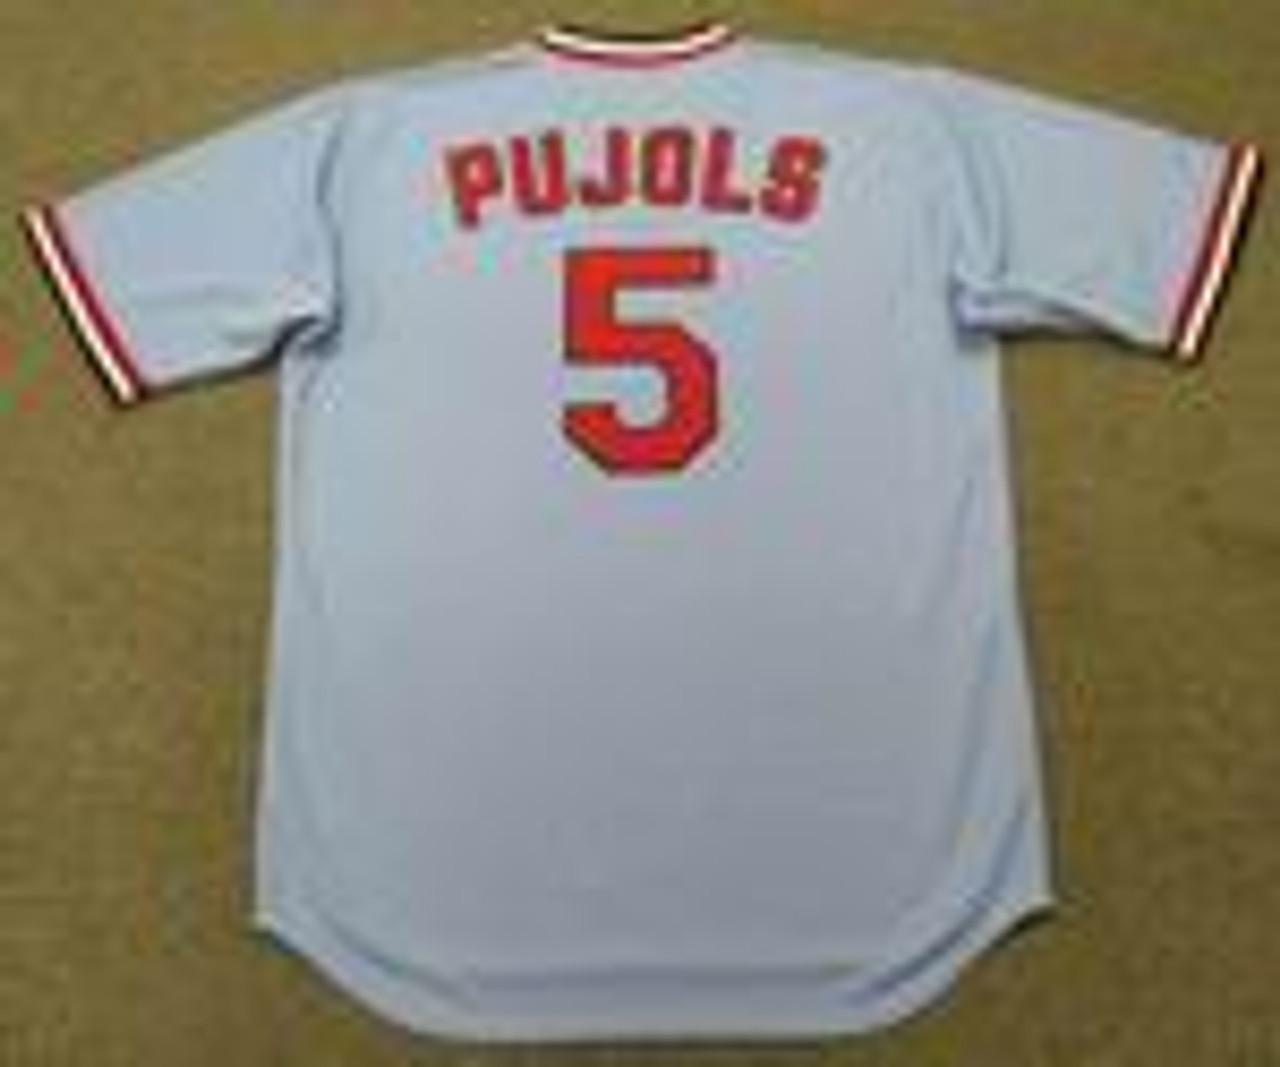 Albert Pujols Jersey - St. Louis Cardinals 1980 Away Throwback MLB